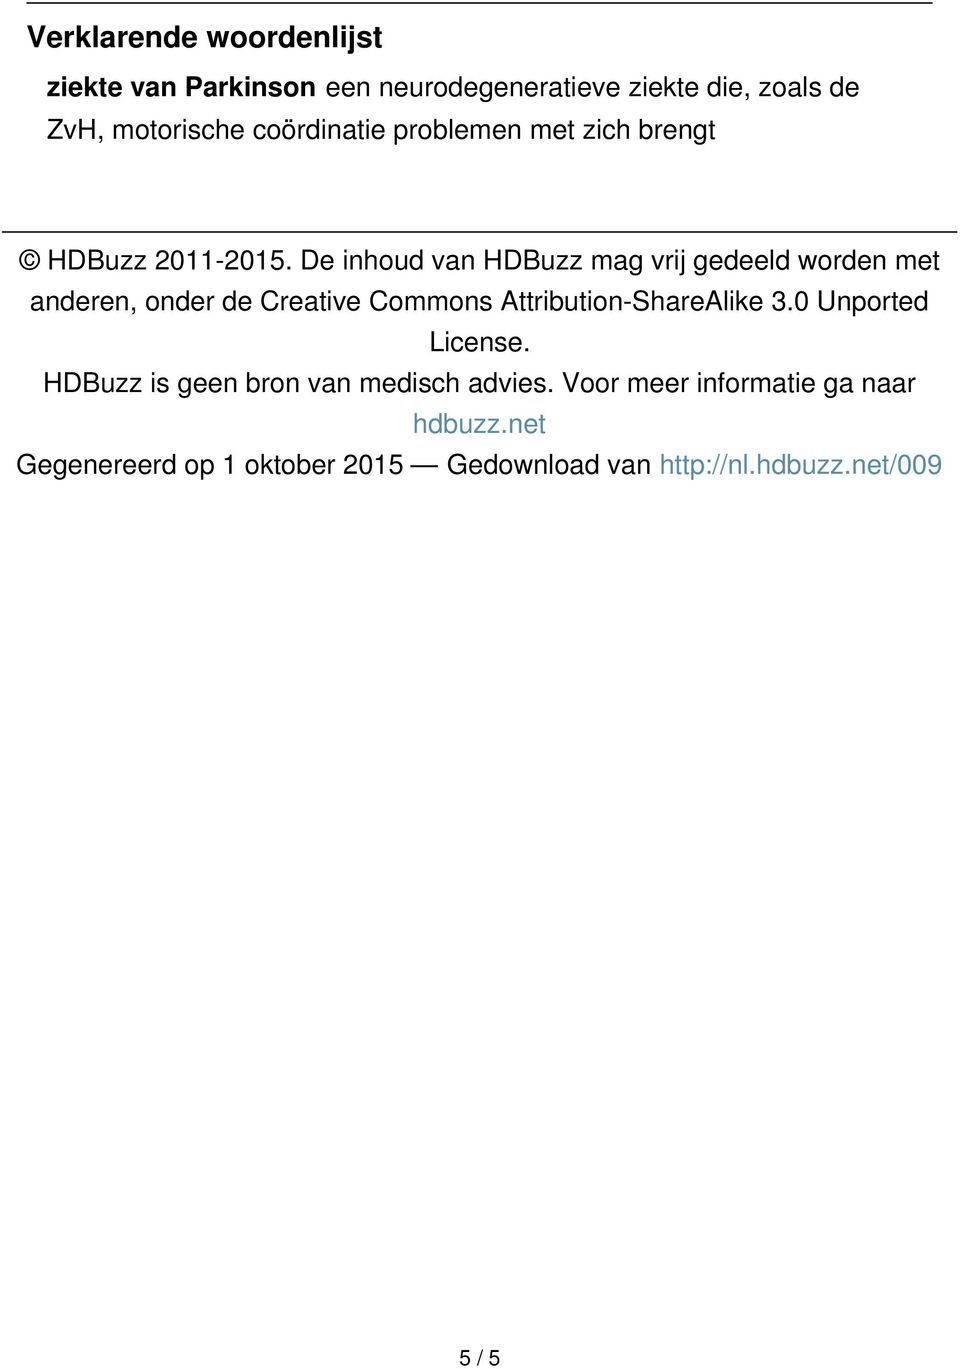 De inhoud van HDBuzz mag vrij gedeeld worden met anderen, onder de Creative Commons Attribution-ShareAlike 3.